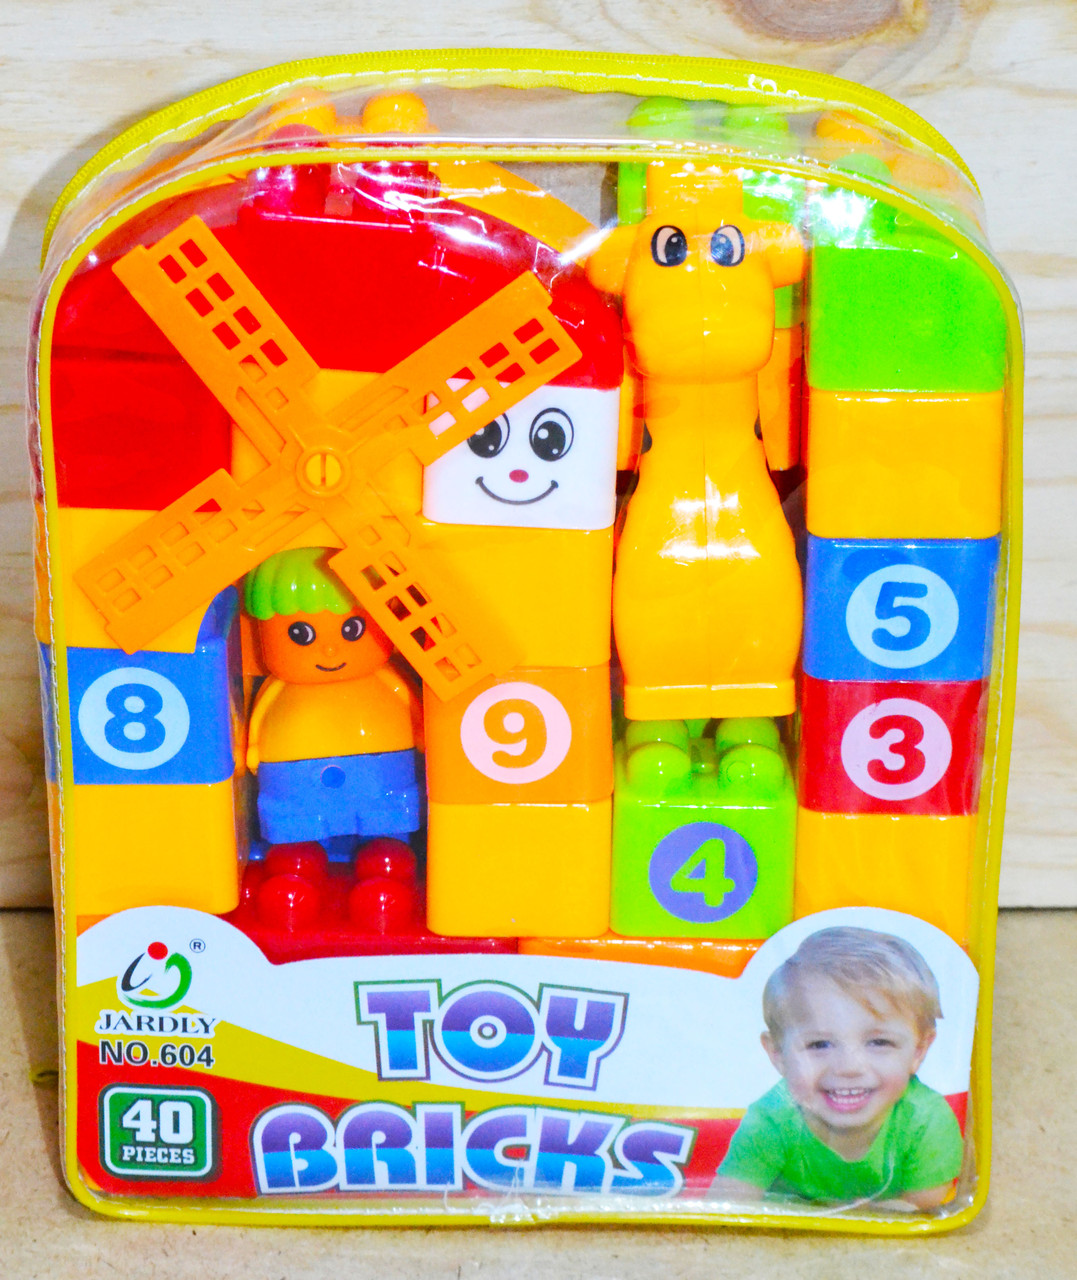 Порвана упаковка!!! 604 Конструктор в рюкзаке Toy Bricks жираф/мельница 40 деталей 23*19